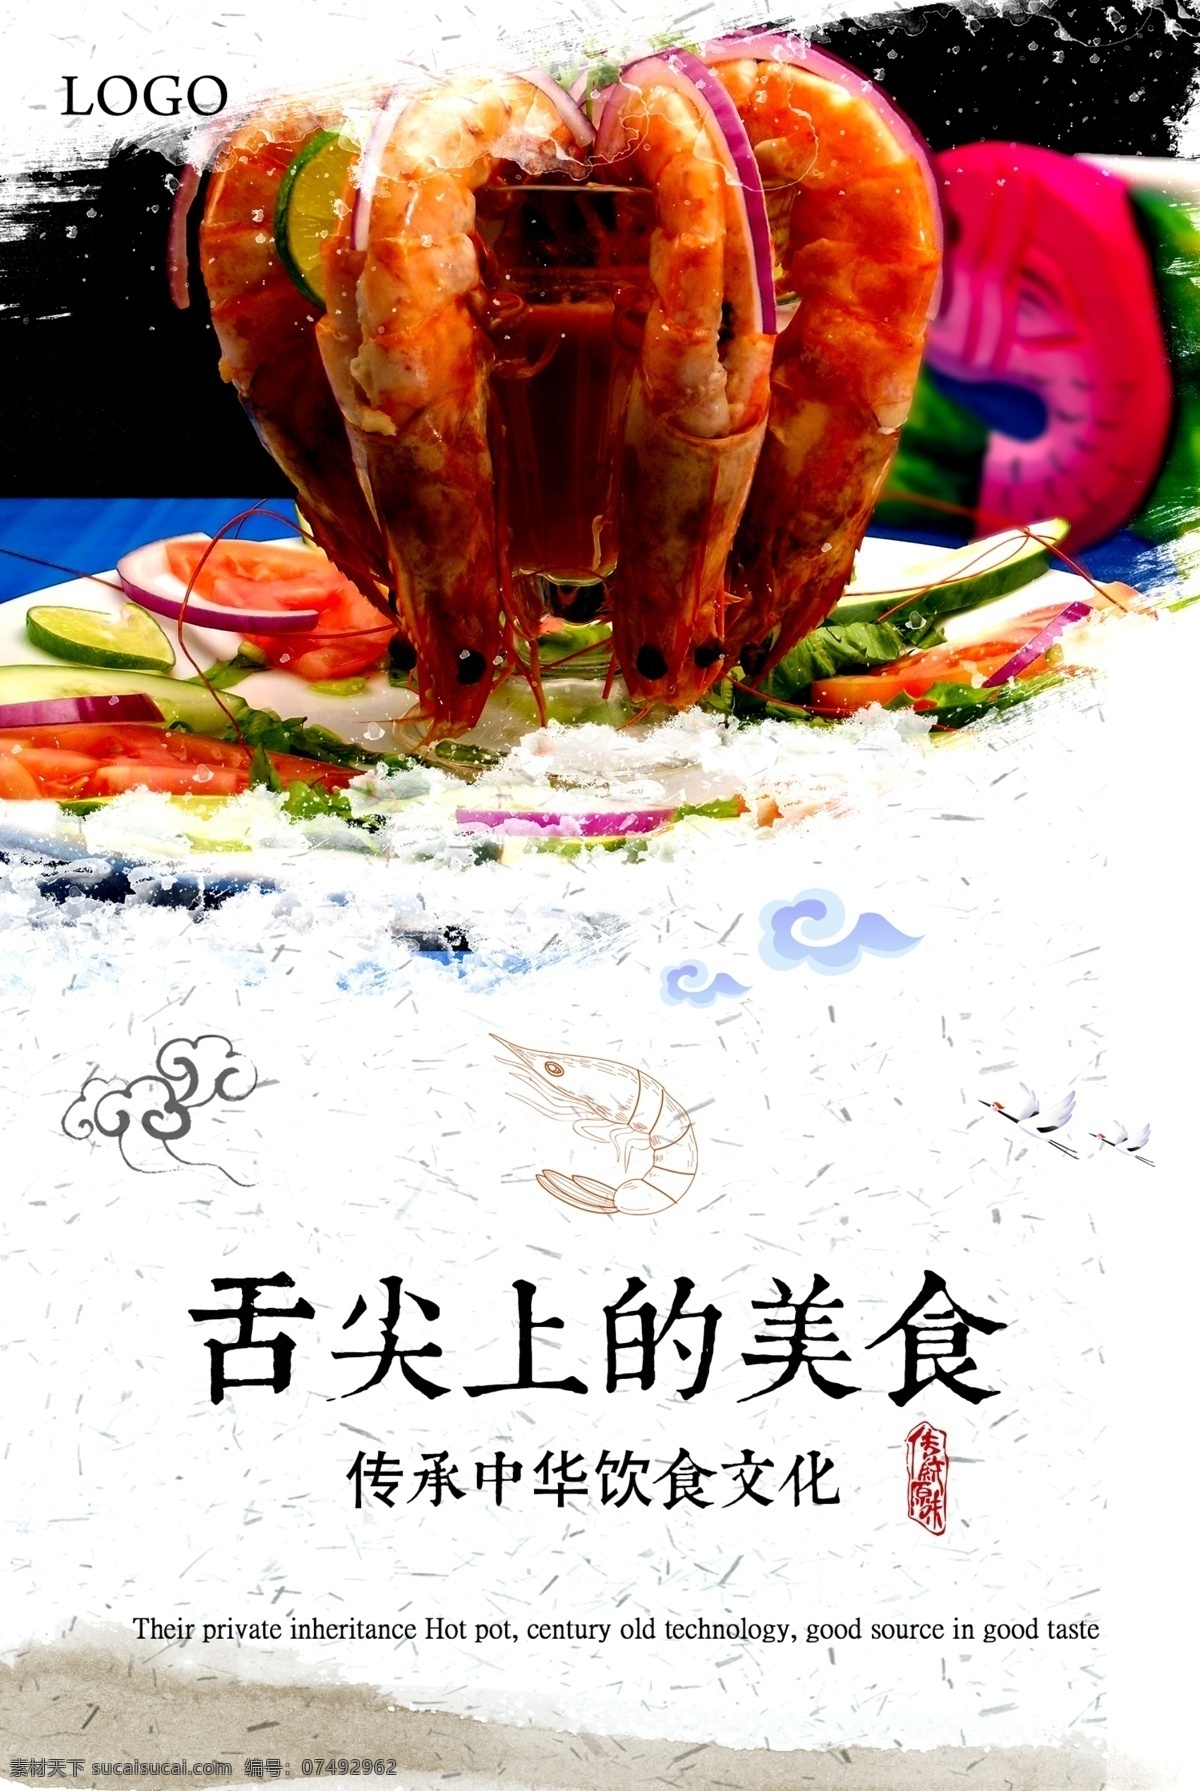 餐饮 海报 舌尖 上 美食 餐饮广告 餐饮海报 广告 简洁 美食广告 美食街 美食文化 美食中国 清新 舌尖上的 舌尖上的中国 中华料理 中华美食